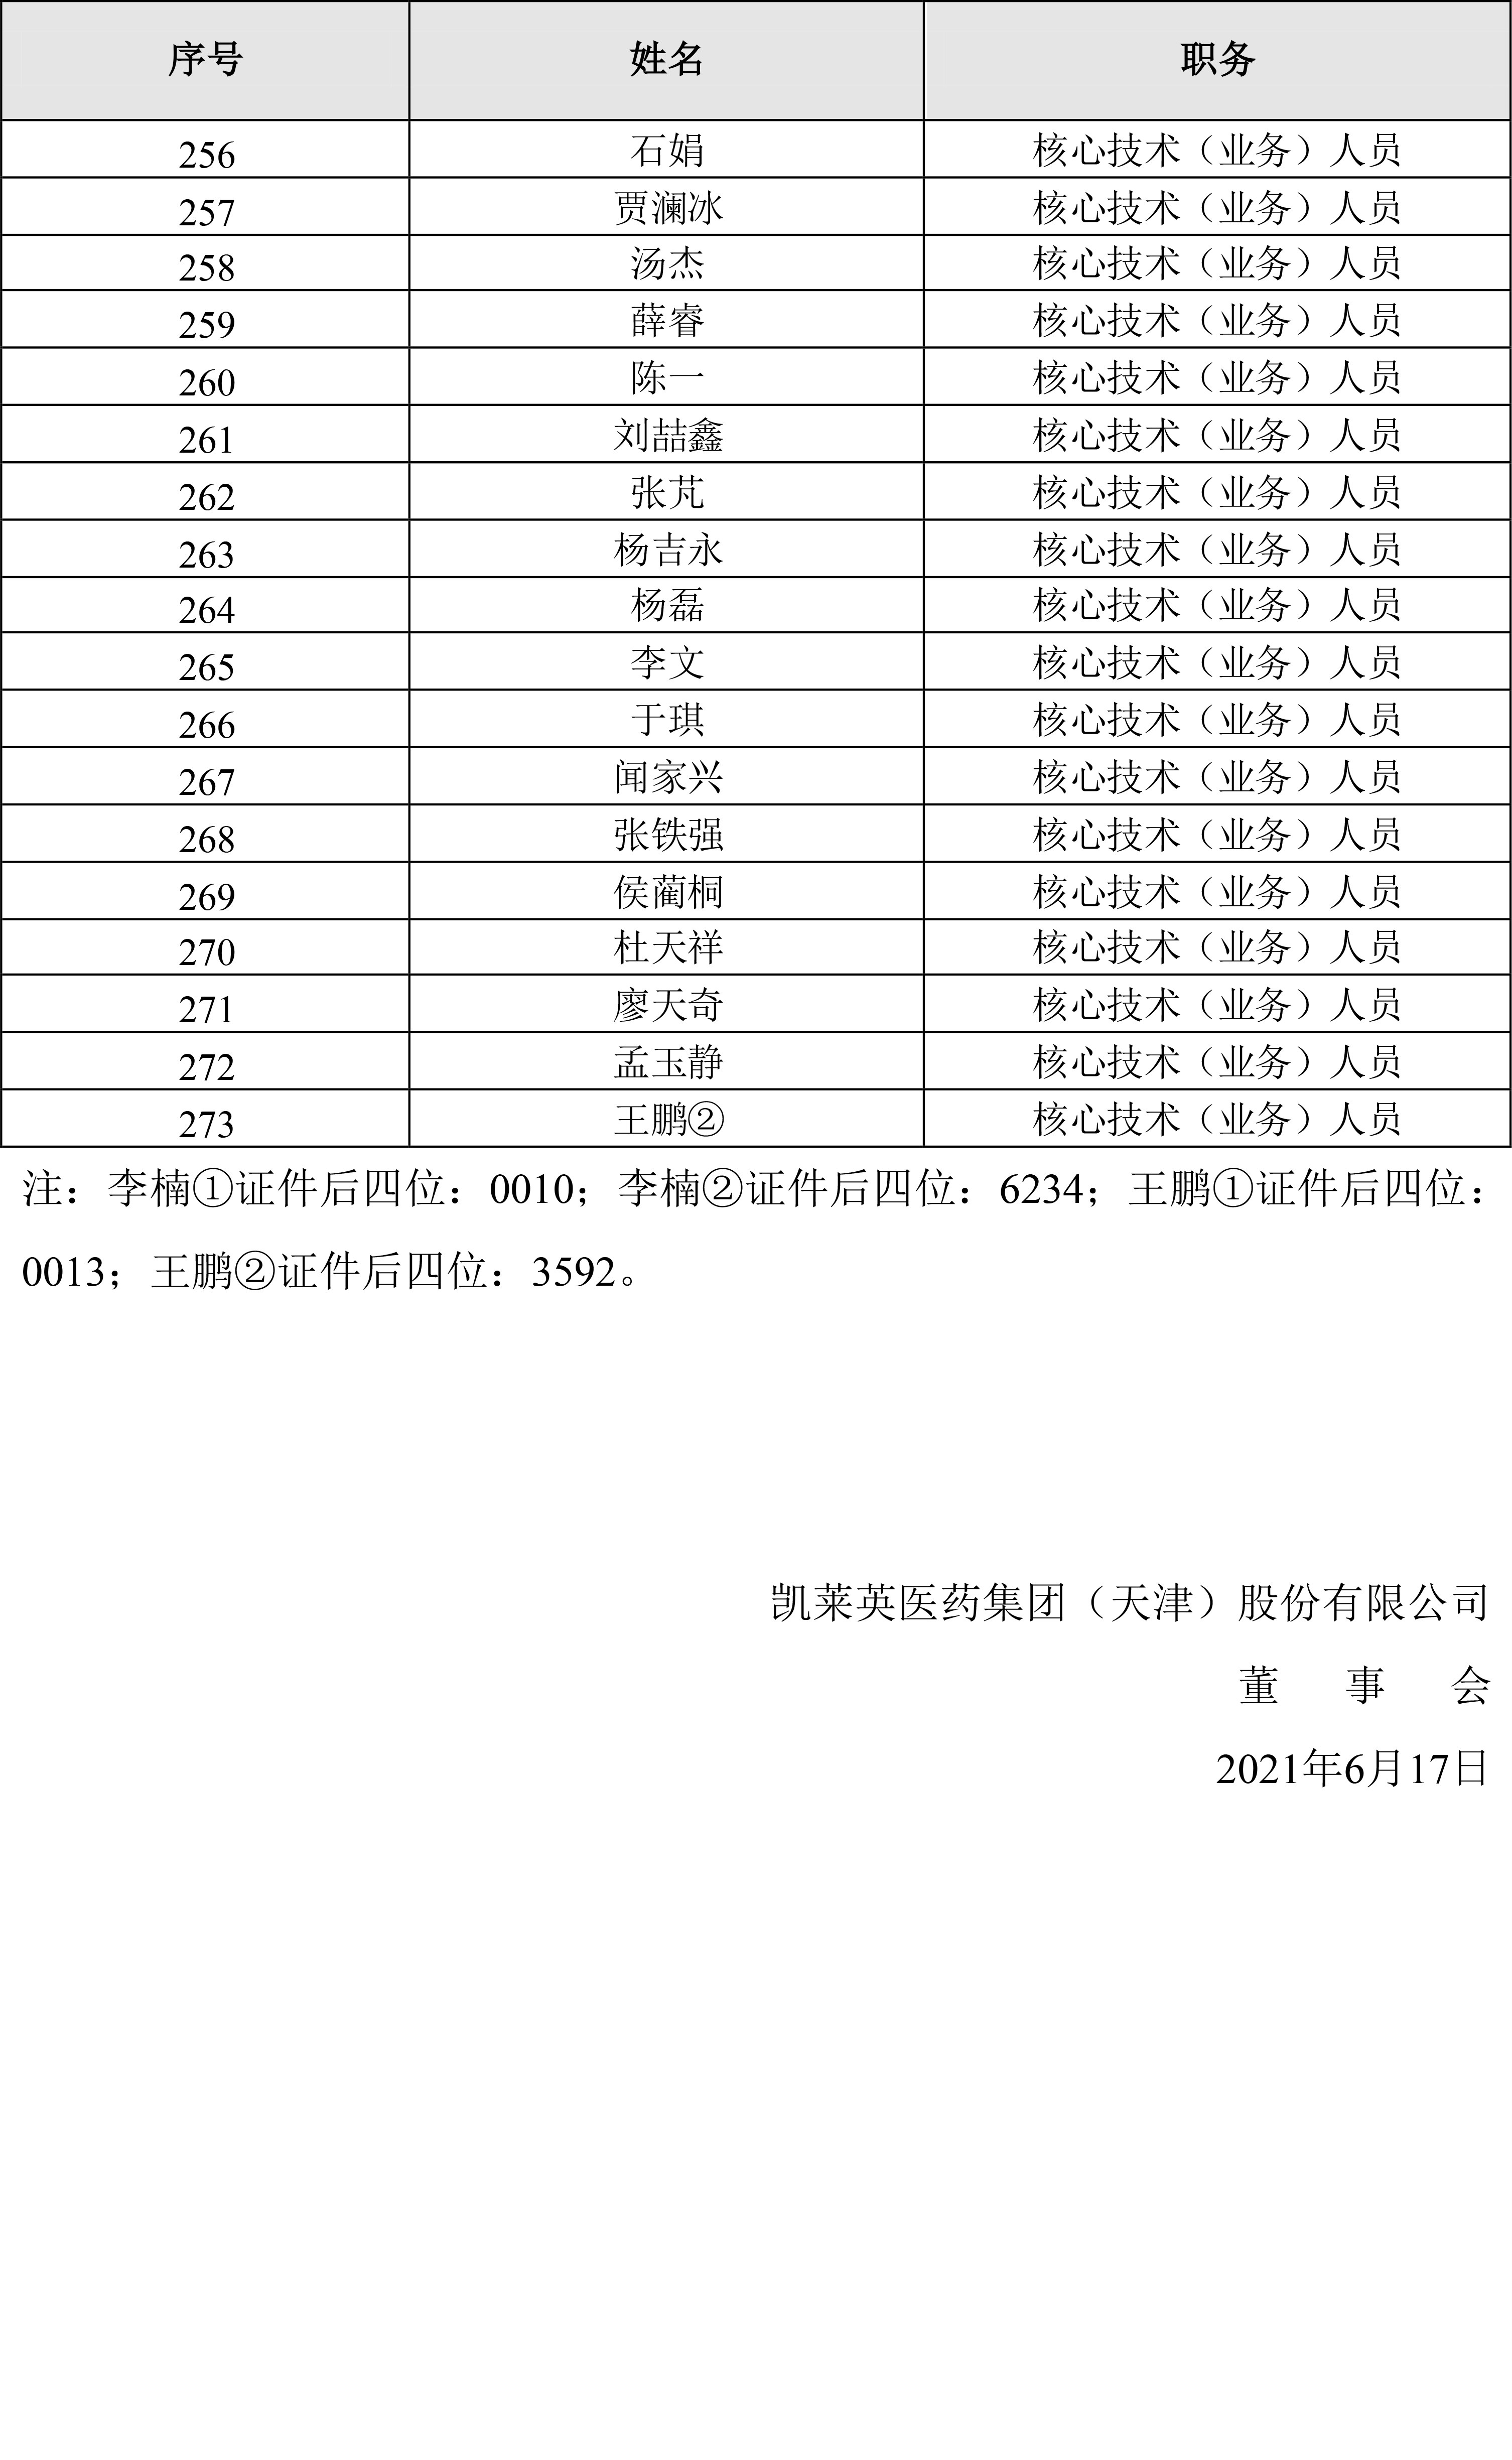 002821_福彩3d2021-06-18_福彩3d：福彩3d2021年限制性股票激励计划激励对象名单-8.jpg